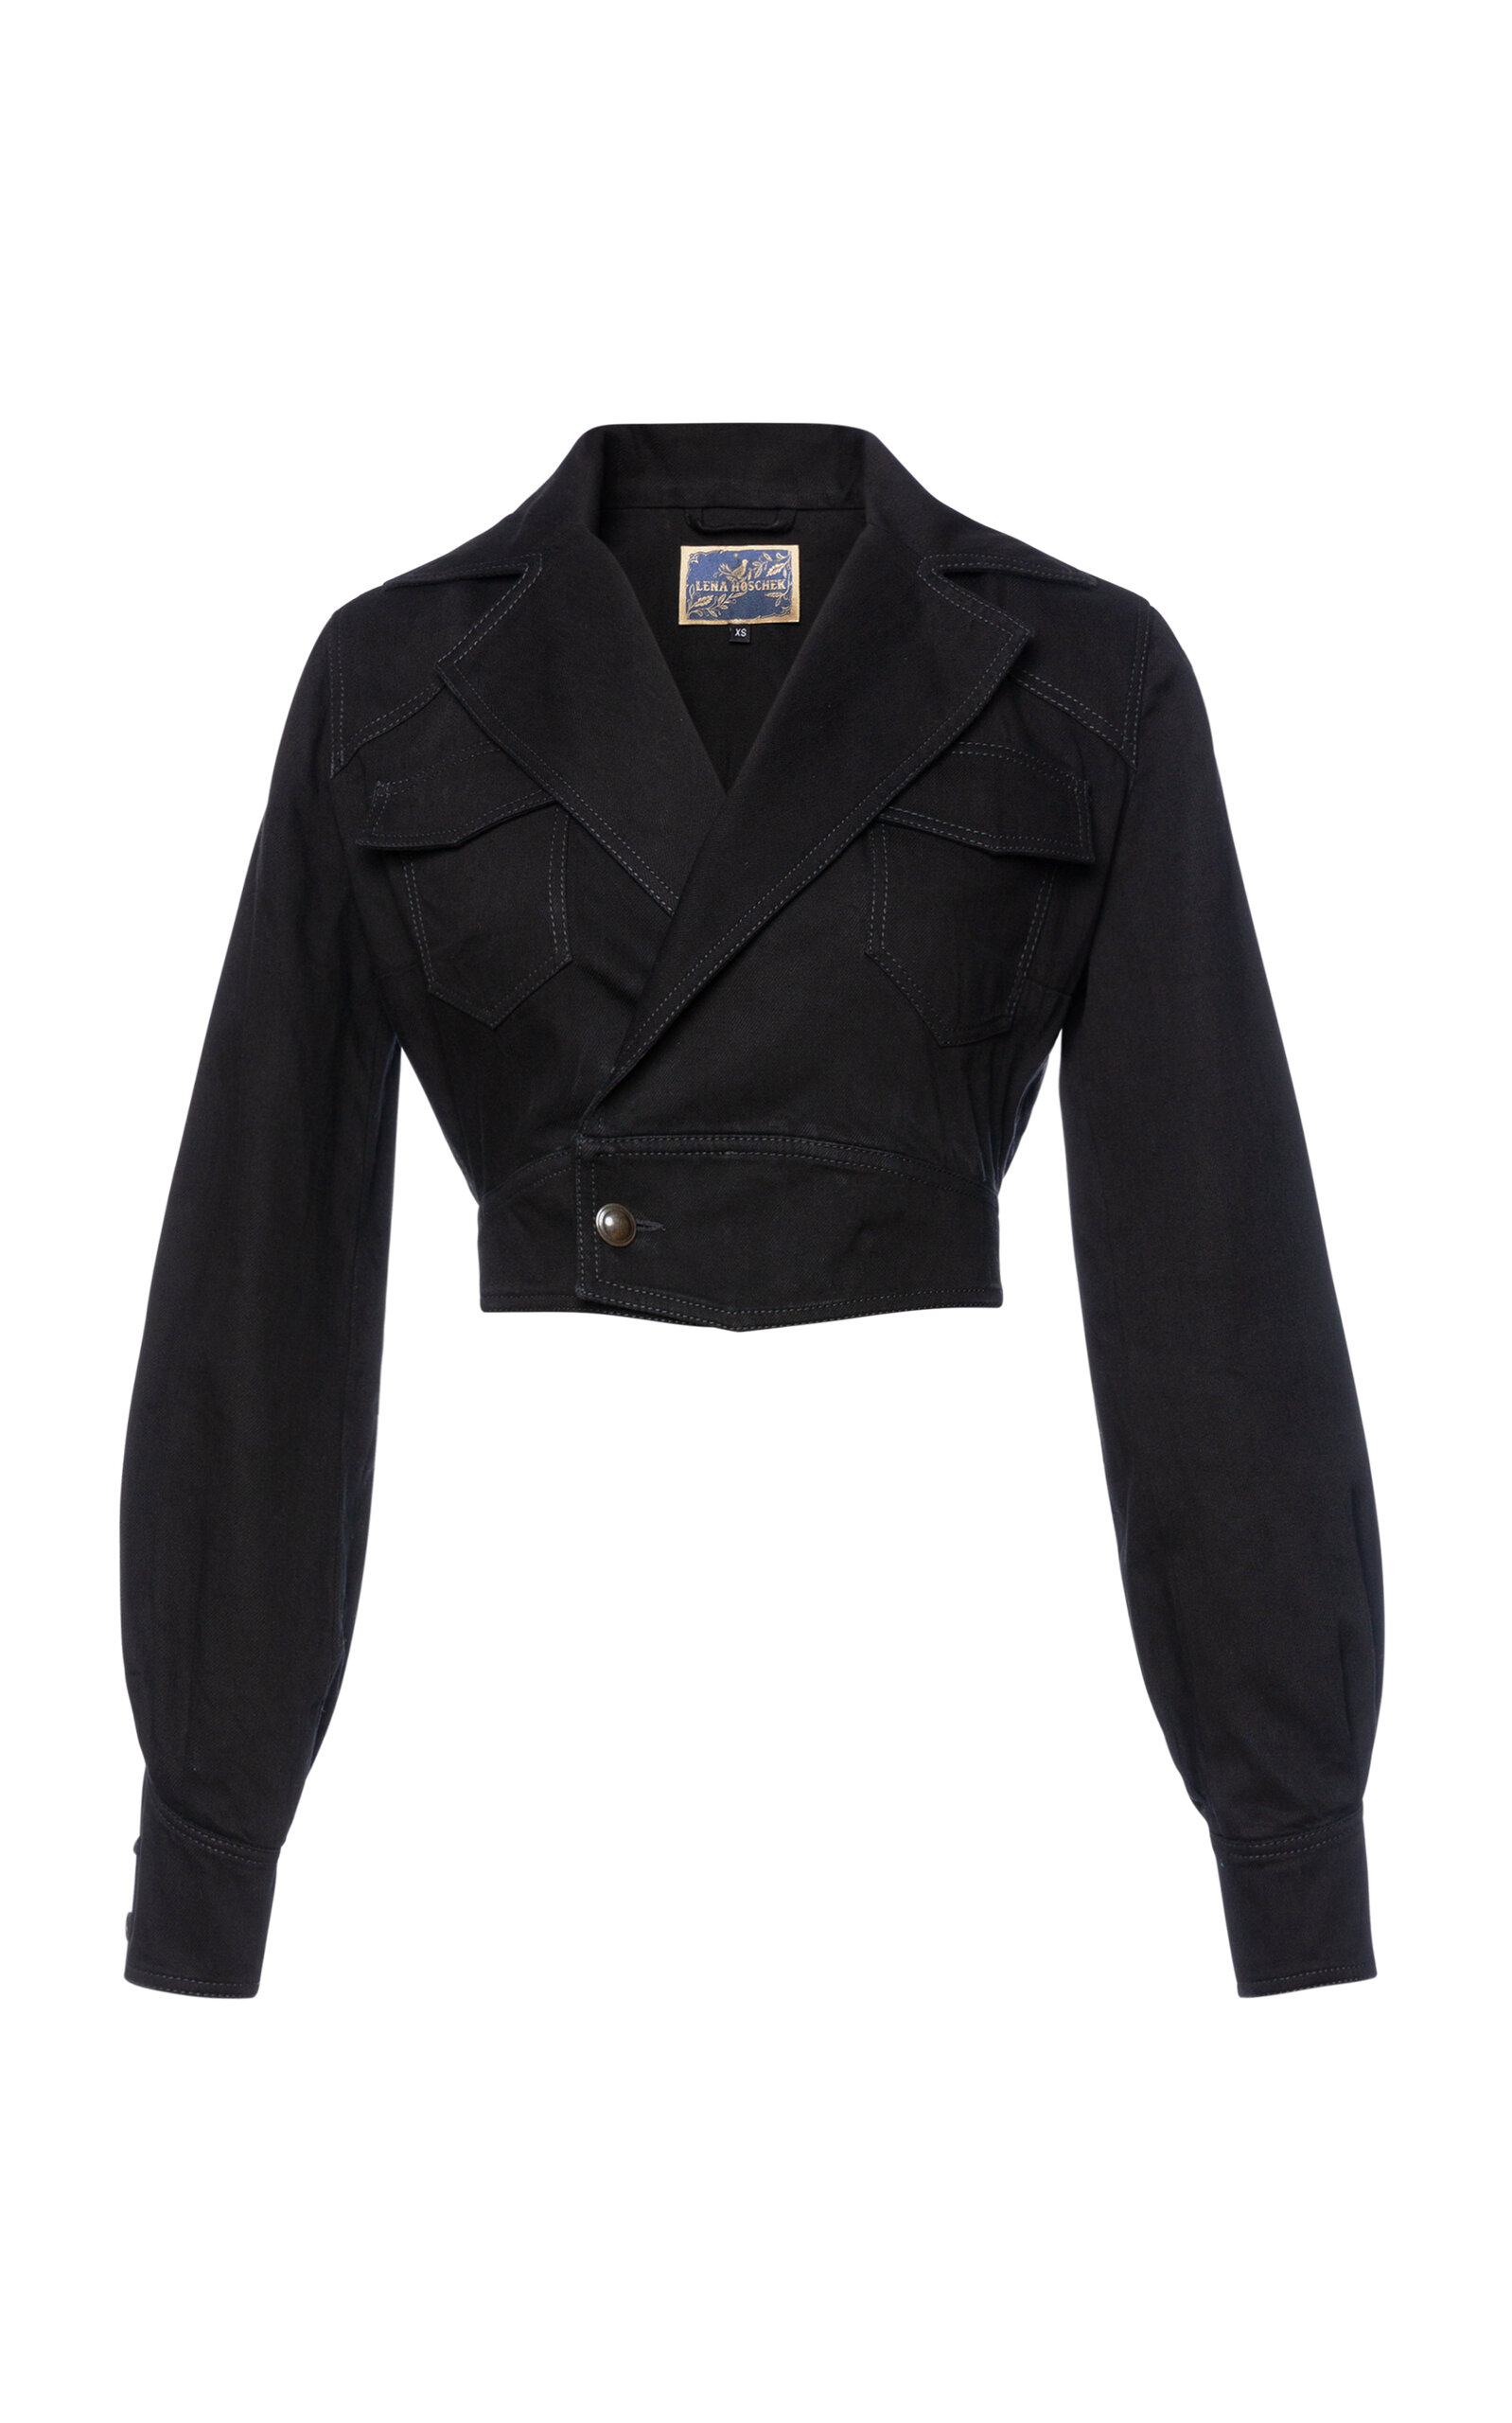 Lena Hoschek Women's Vegas Cropped Cotton Jacket In Black